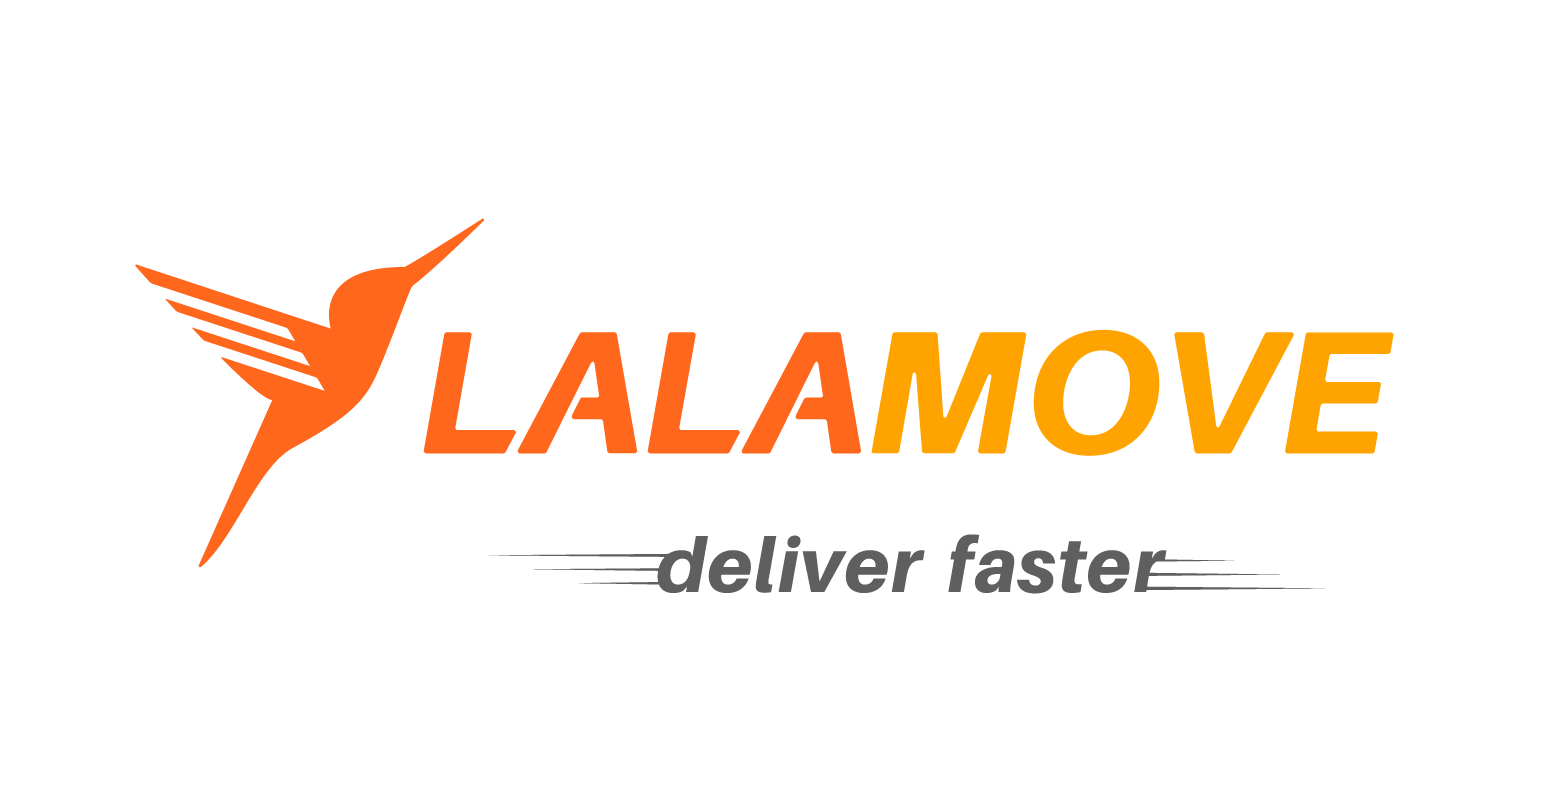 lalamove-logo-vector-01.png